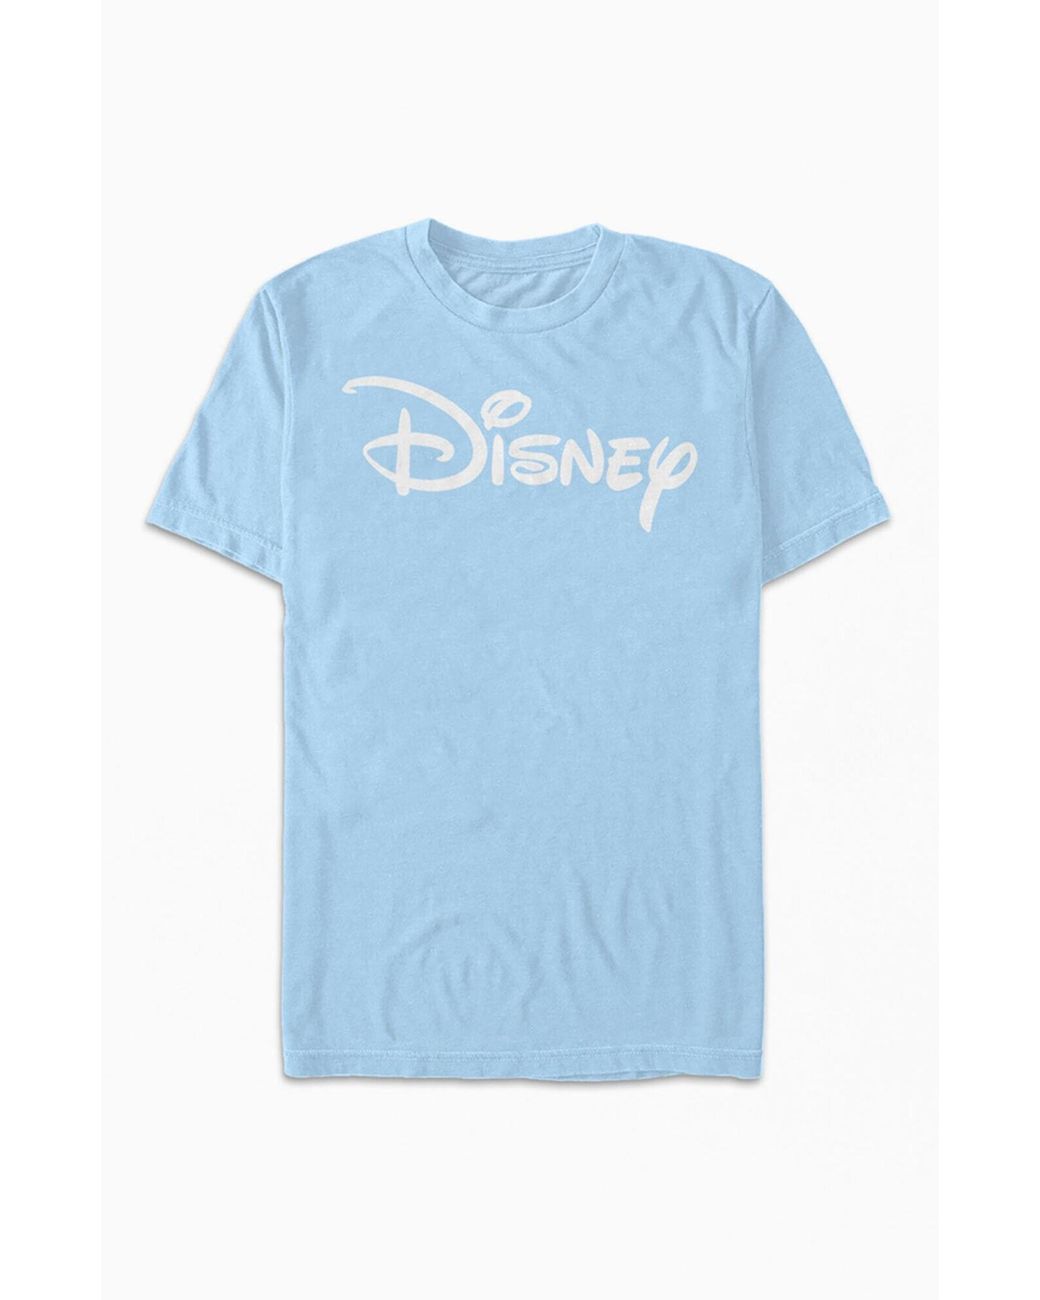 PacSun Basic Disney Logo T-shirt in Blue for Men - Lyst